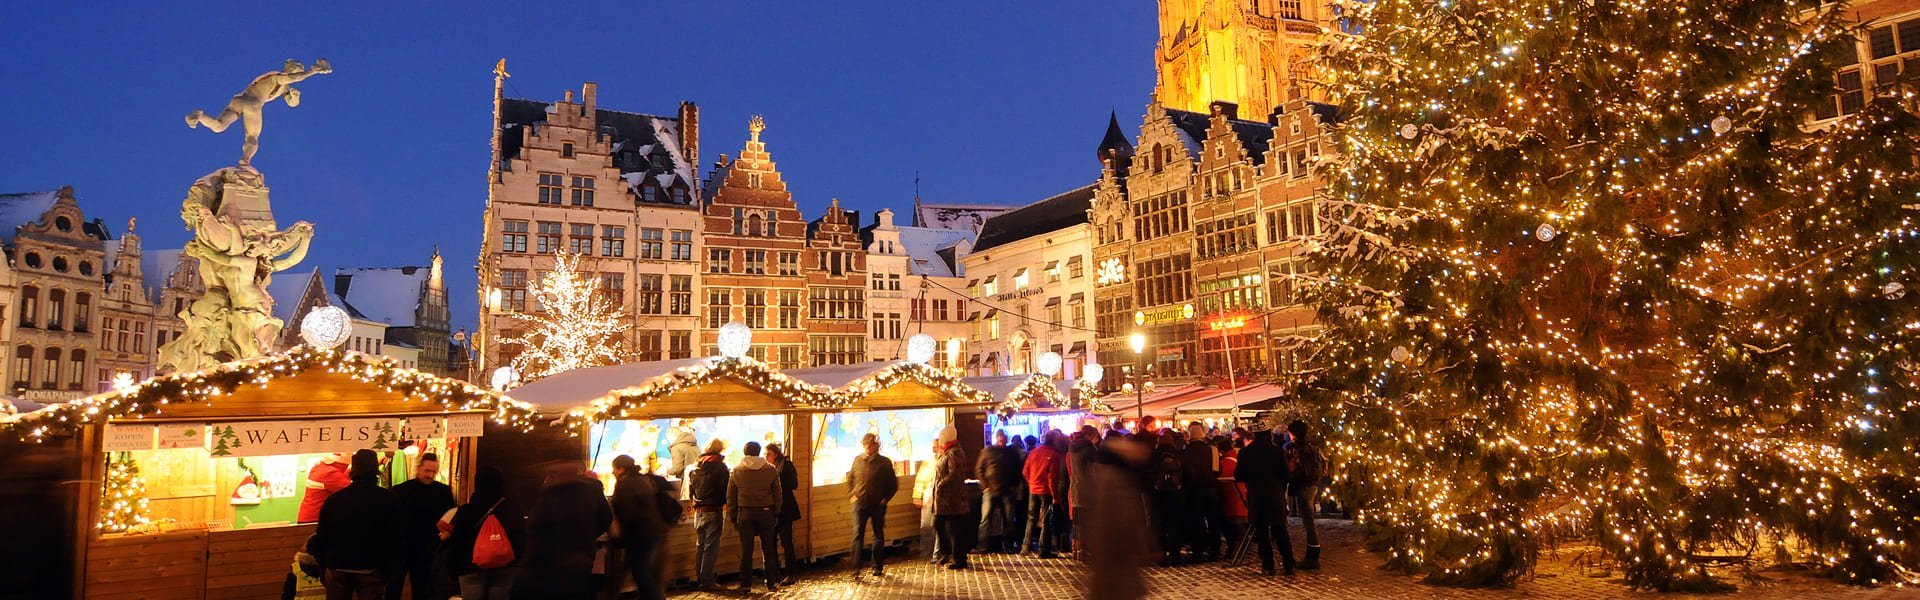 Kerstmarkt in Antwerpen, België